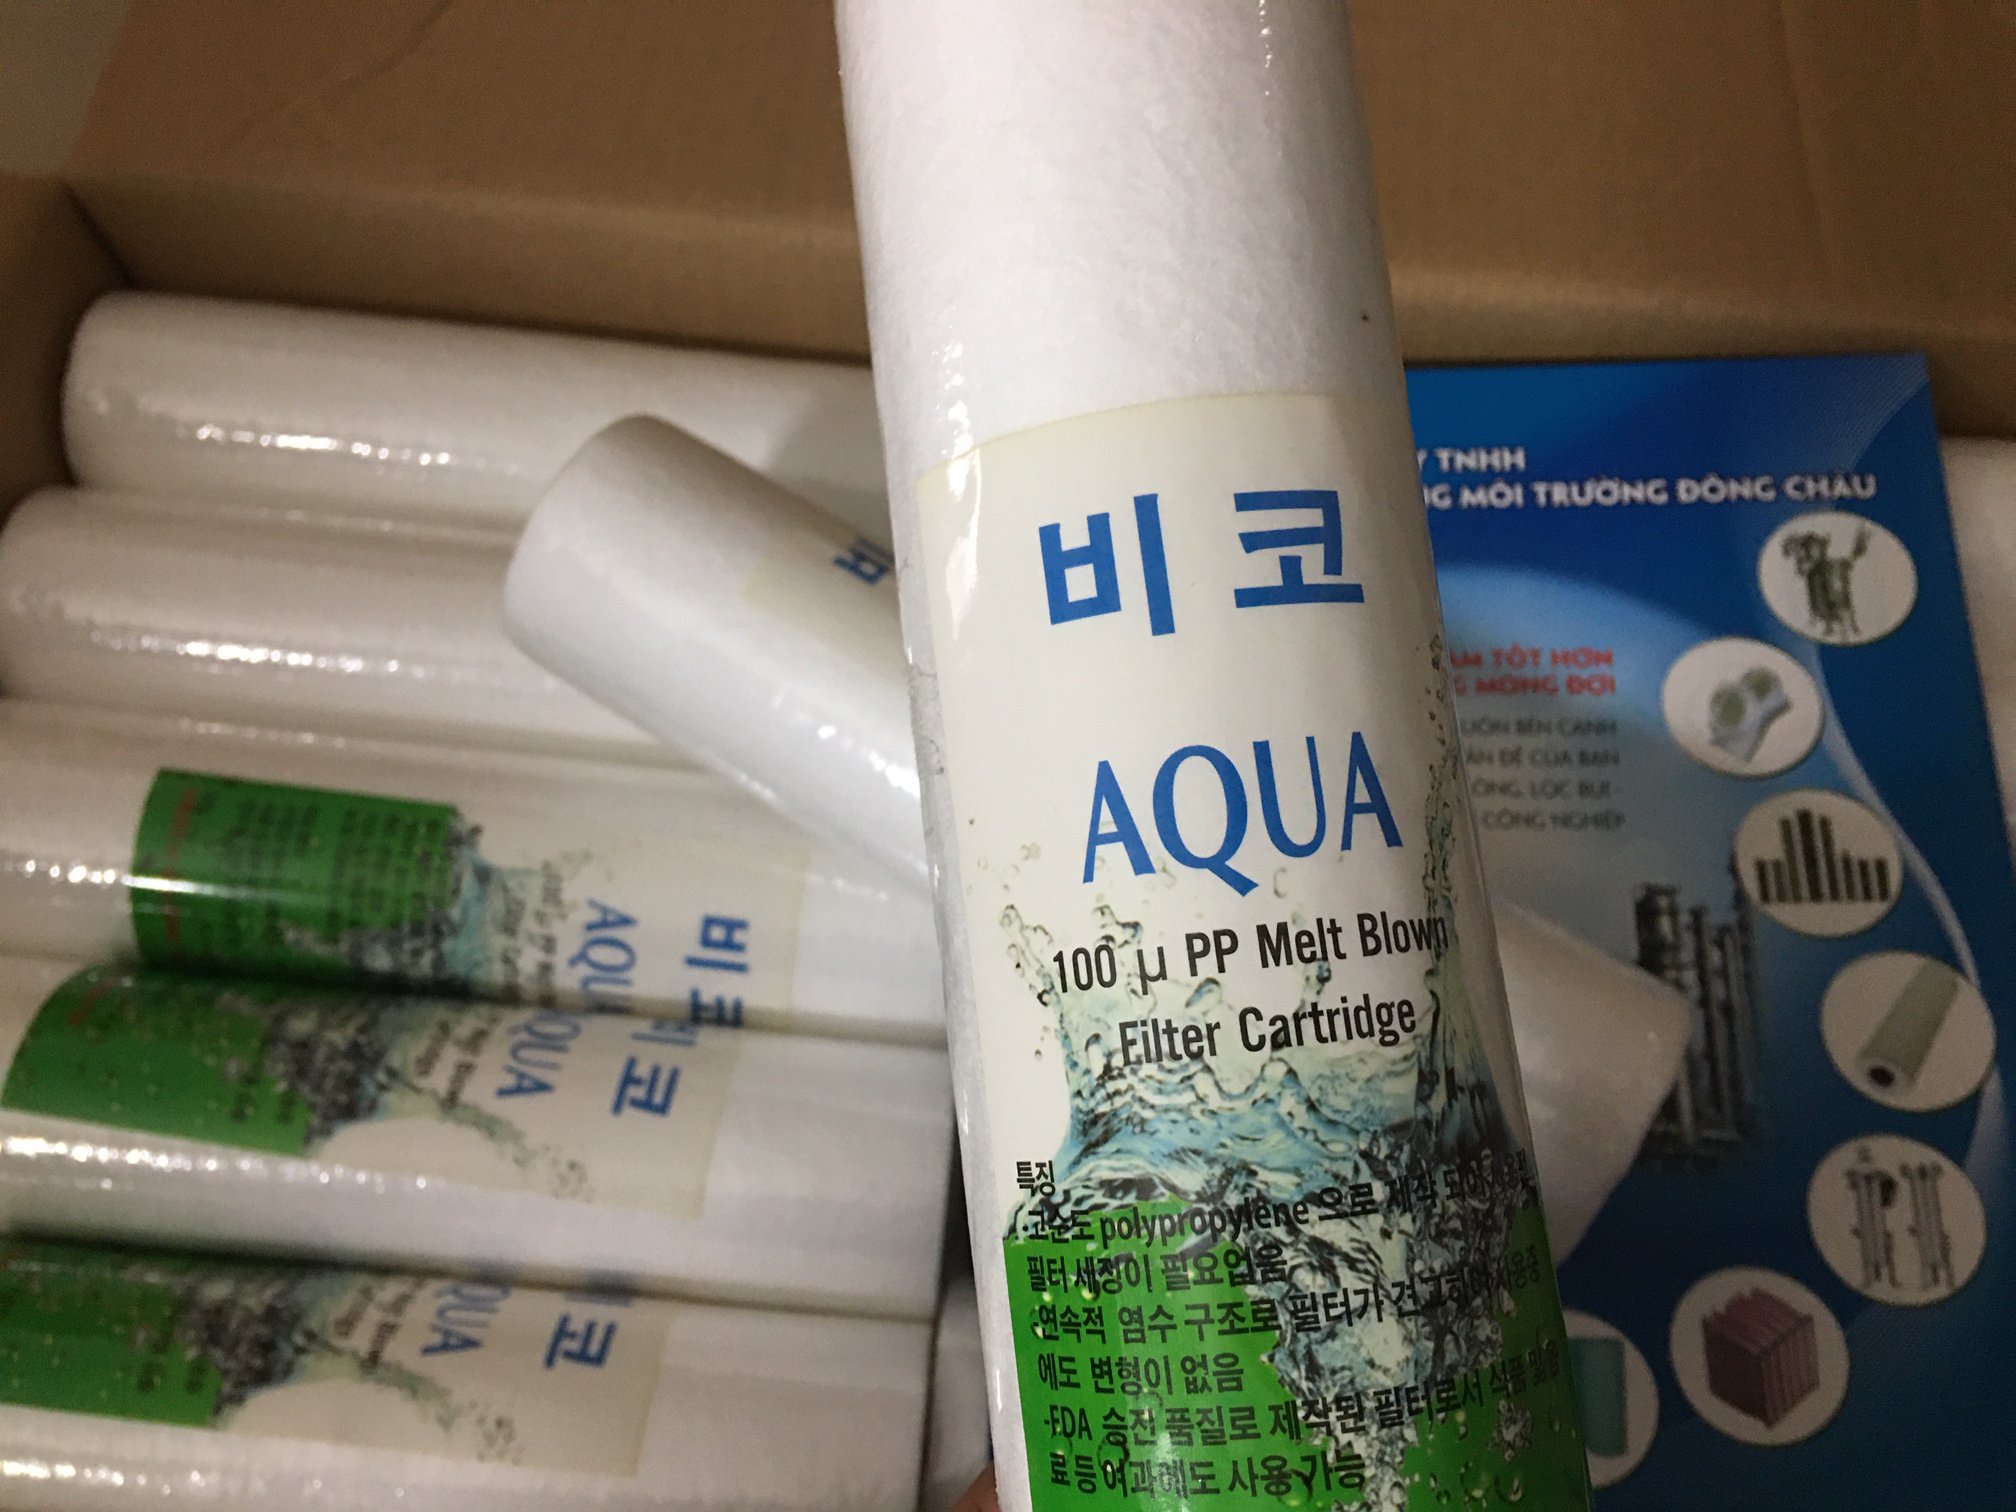 Lõi lọc nước aqua Korea mẫu mới 100-micron 10-inch chất lượng